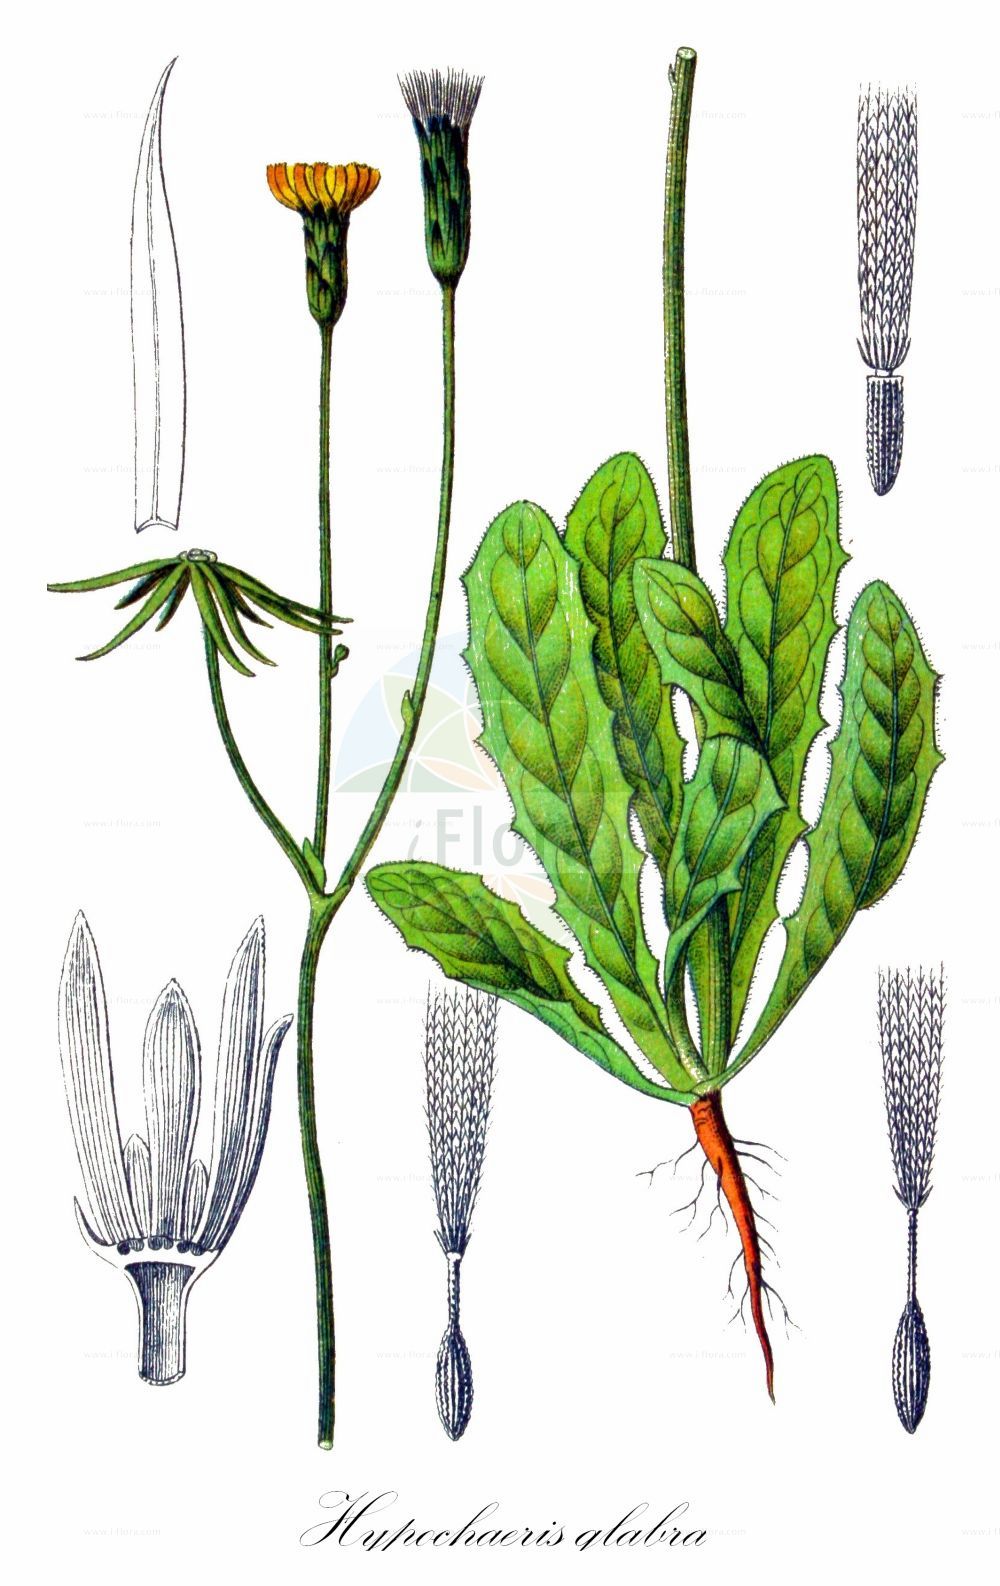 Historische Abbildung von Hypochaeris glabra (Kahles Ferkelkraut - Smooth Cat's-ear). Das Bild zeigt Blatt, Bluete, Frucht und Same. ---- Historical Drawing of Hypochaeris glabra (Kahles Ferkelkraut - Smooth Cat's-ear). The image is showing leaf, flower, fruit and seed.(Hypochaeris glabra,Kahles Ferkelkraut,Smooth Cat's-ear,Hypochaeris balbisii,Hypochaeris glabra,Hypochaeris simplex,Kahles Ferkelkraut,Smooth Cat's-ear,Cat's-ear,False Dandelion,Hypochaeris,Ferkelkraut,Cat's Ear,Asteraceae,Korbblütengewächse,Daisy family,Blatt,Bluete,Frucht,Same,leaf,flower,fruit,seed,Sturm (1796f))